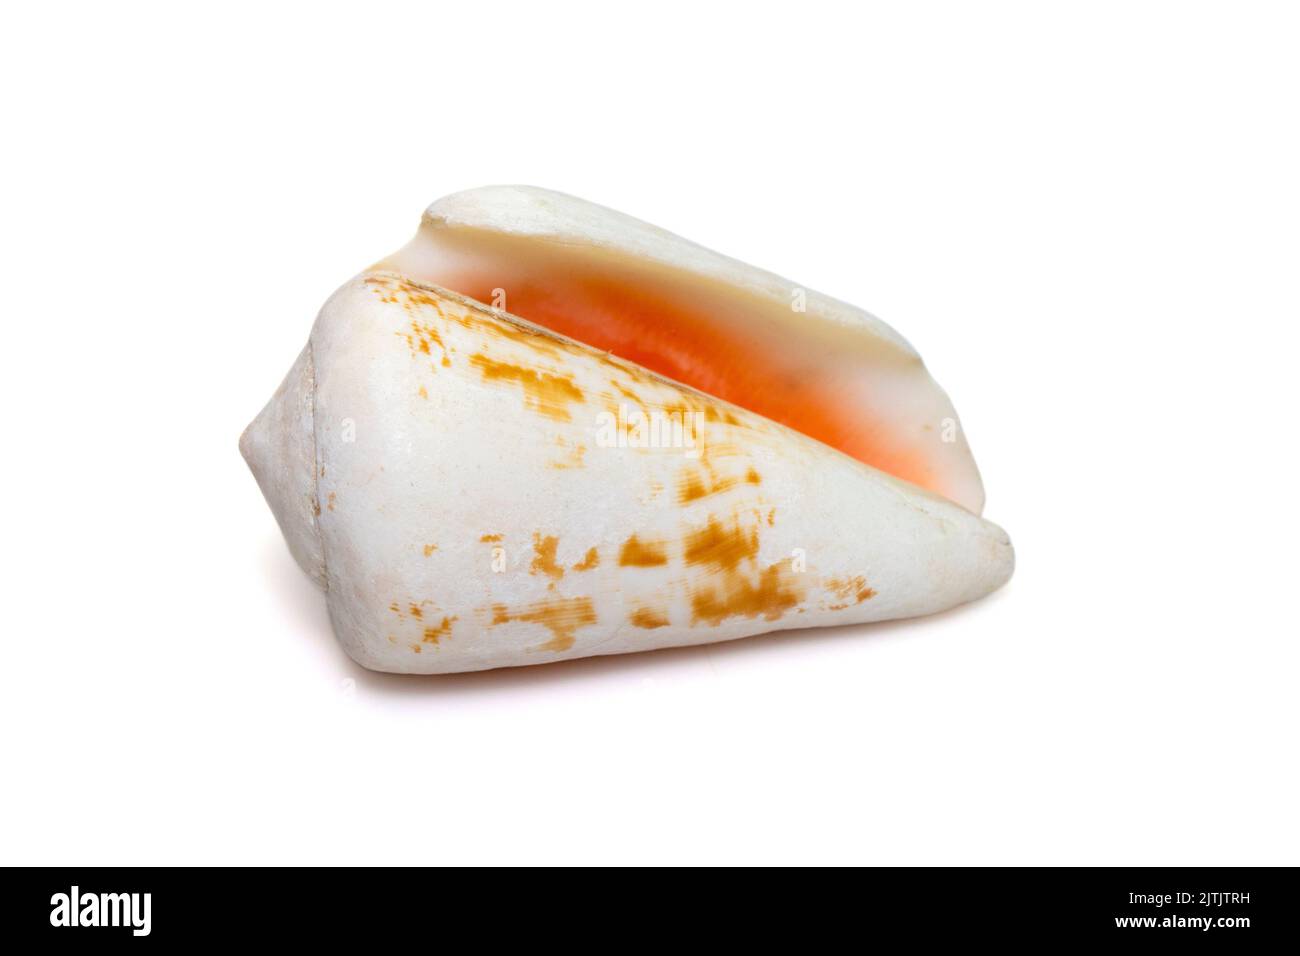 Image de la coquille de mer de strombus (Conomurex luhuanus) de fraise isolée sur fond blanc. Animaux sous-marins. Coquillages. Banque D'Images